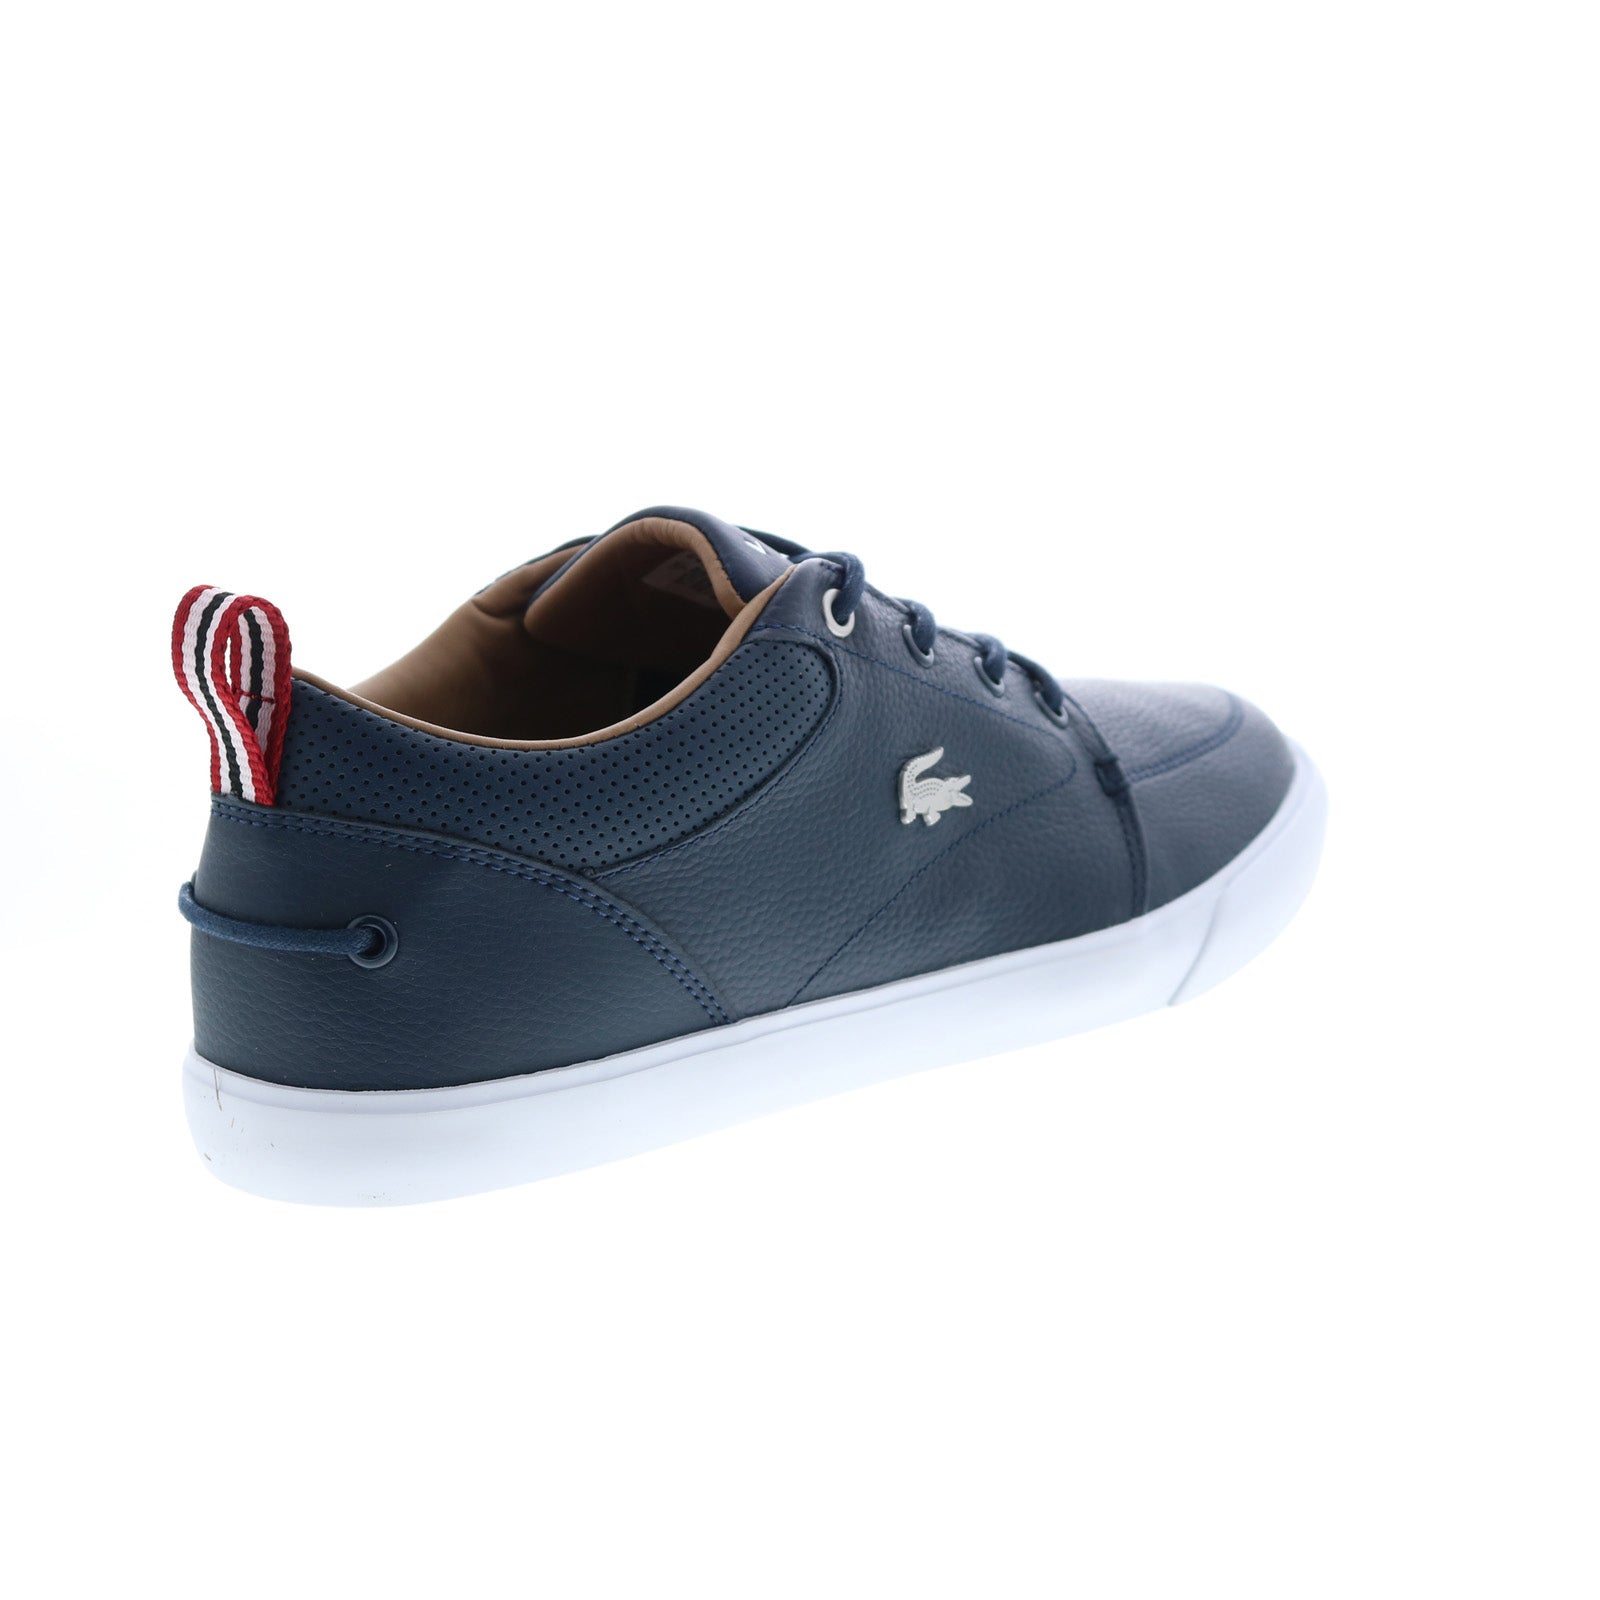 winnaar schoonmaken Bloeien Lacoste Bayliss 119 1 U Cma Mens Blue Leather Lifestyle Sneakers Shoes -  Ruze Shoes